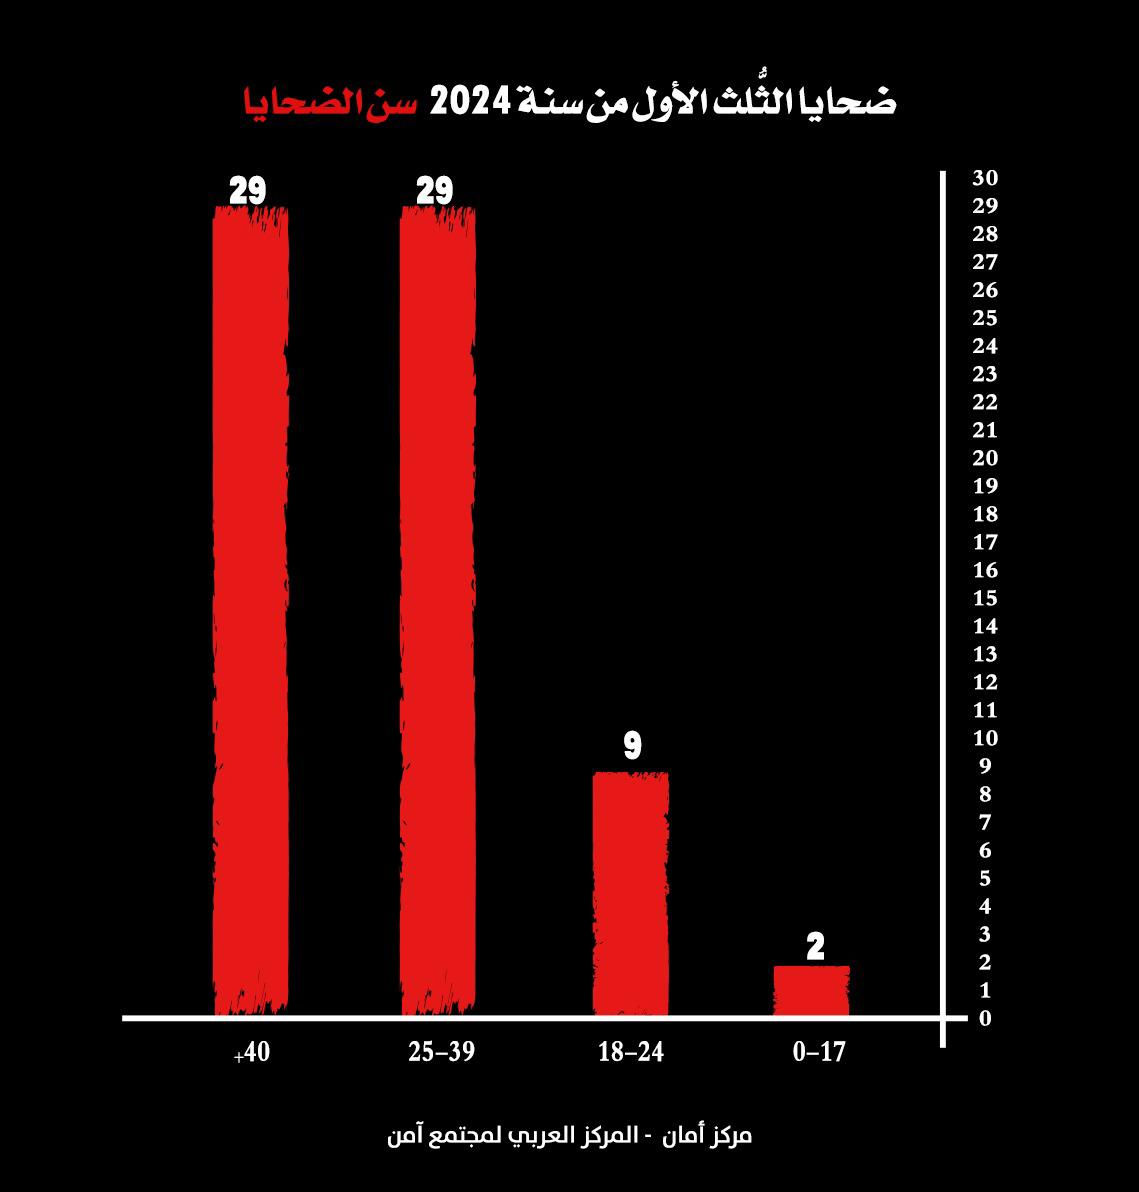 الثلث الأول لعام 2024 هو الأعلى في أعداد ضحايا الجريمة في المجتمع العربي